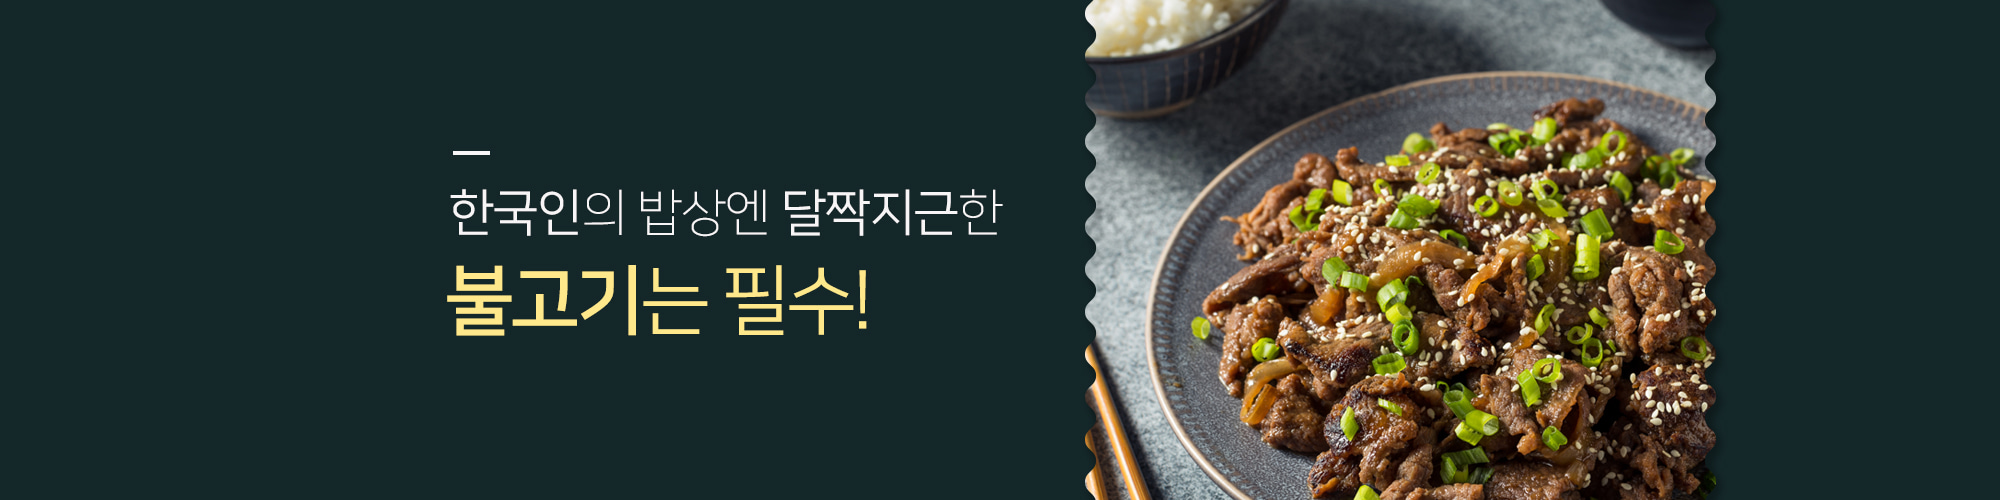 한국인의 밥상엔 달짝지근한 불고기가 딱!